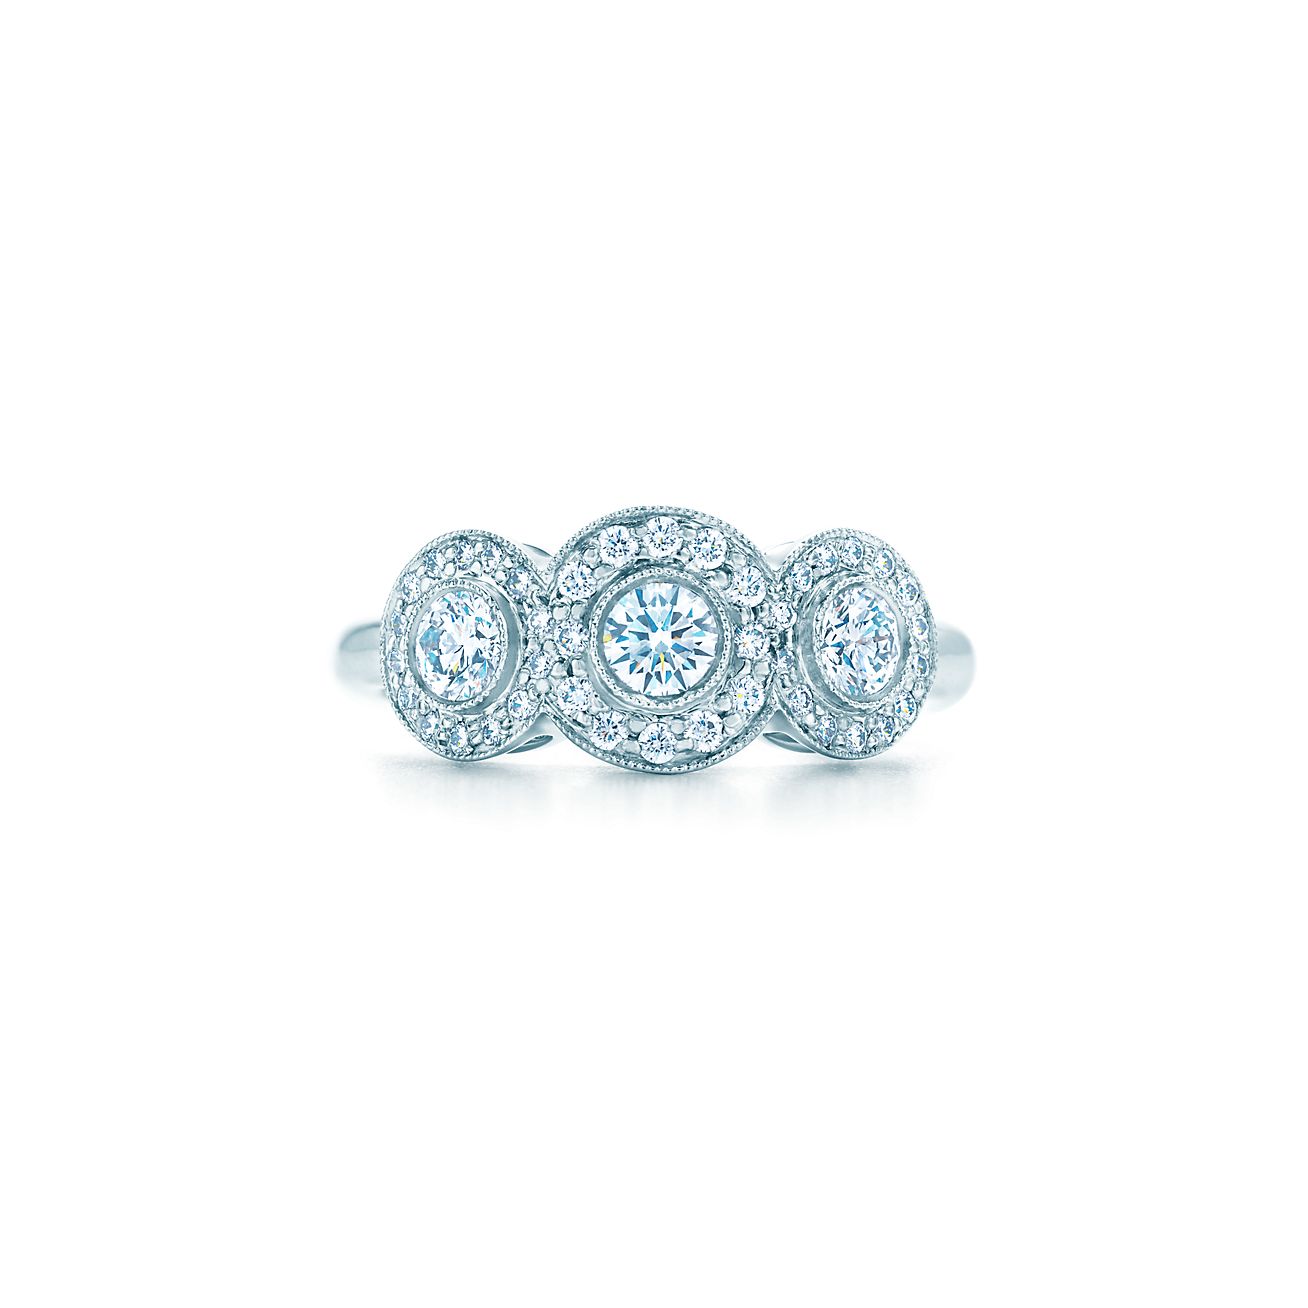 Bague Tiffany Circlet en platine 950 millièmes et diamants - Size 4 Tiffany & Co.